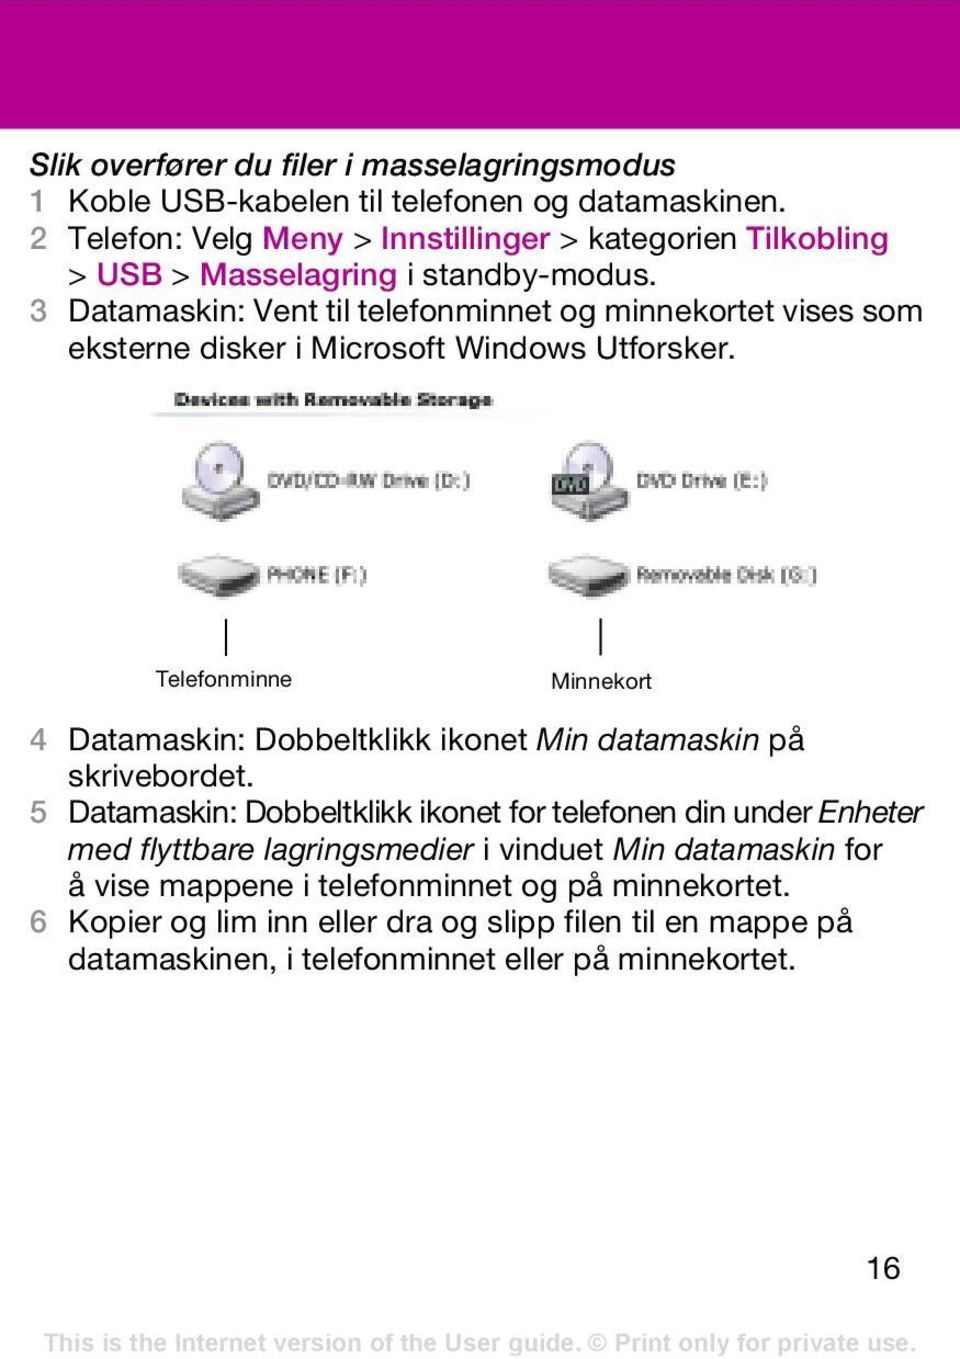 3 Datamaskin: Vent til telefonminnet og minnekortet vises som eksterne disker i Microsoft Windows Utforsker.